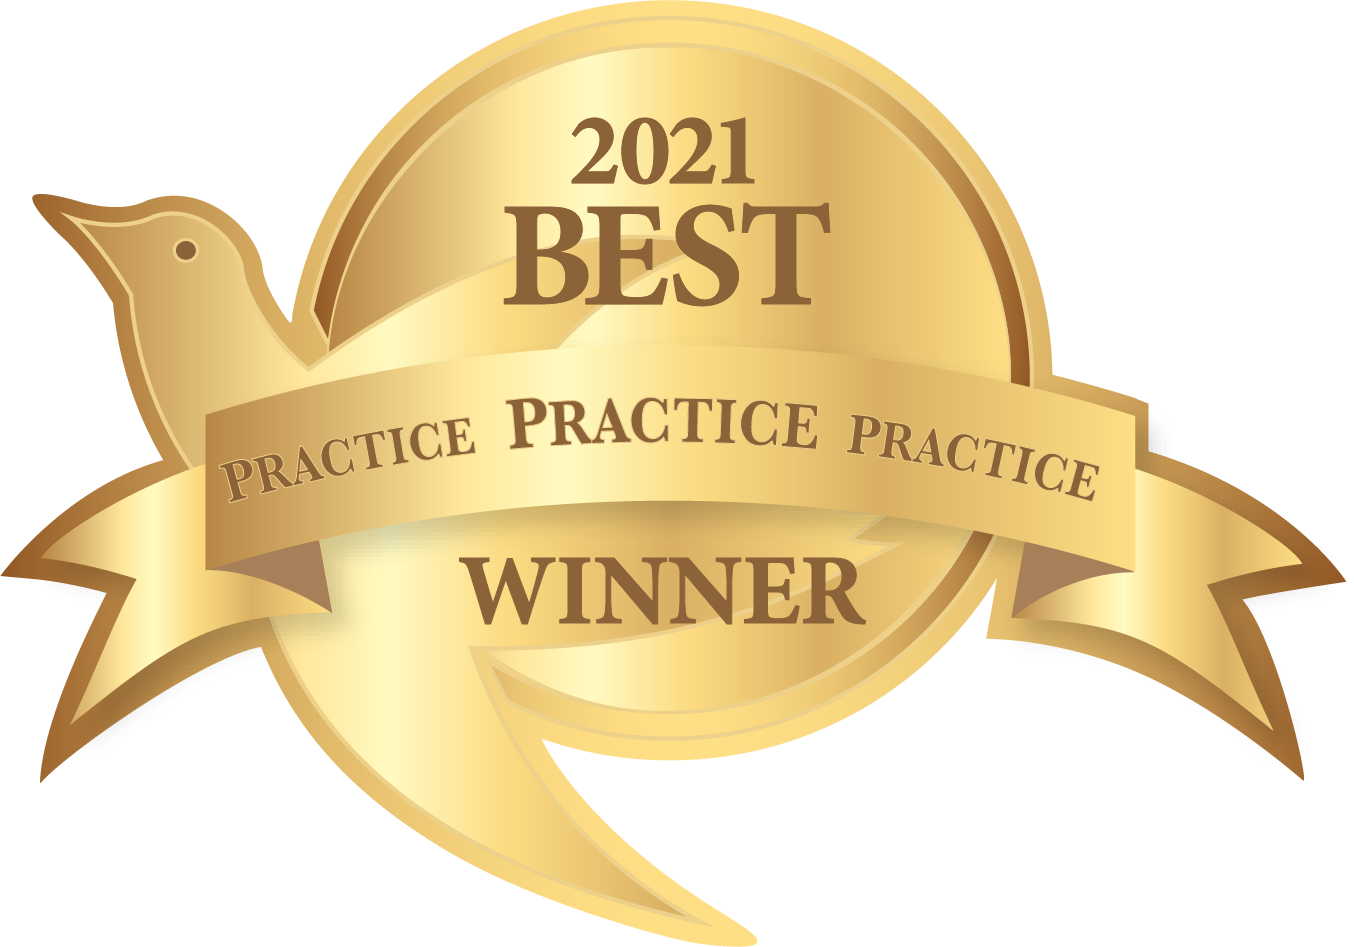 Best Practices Winner